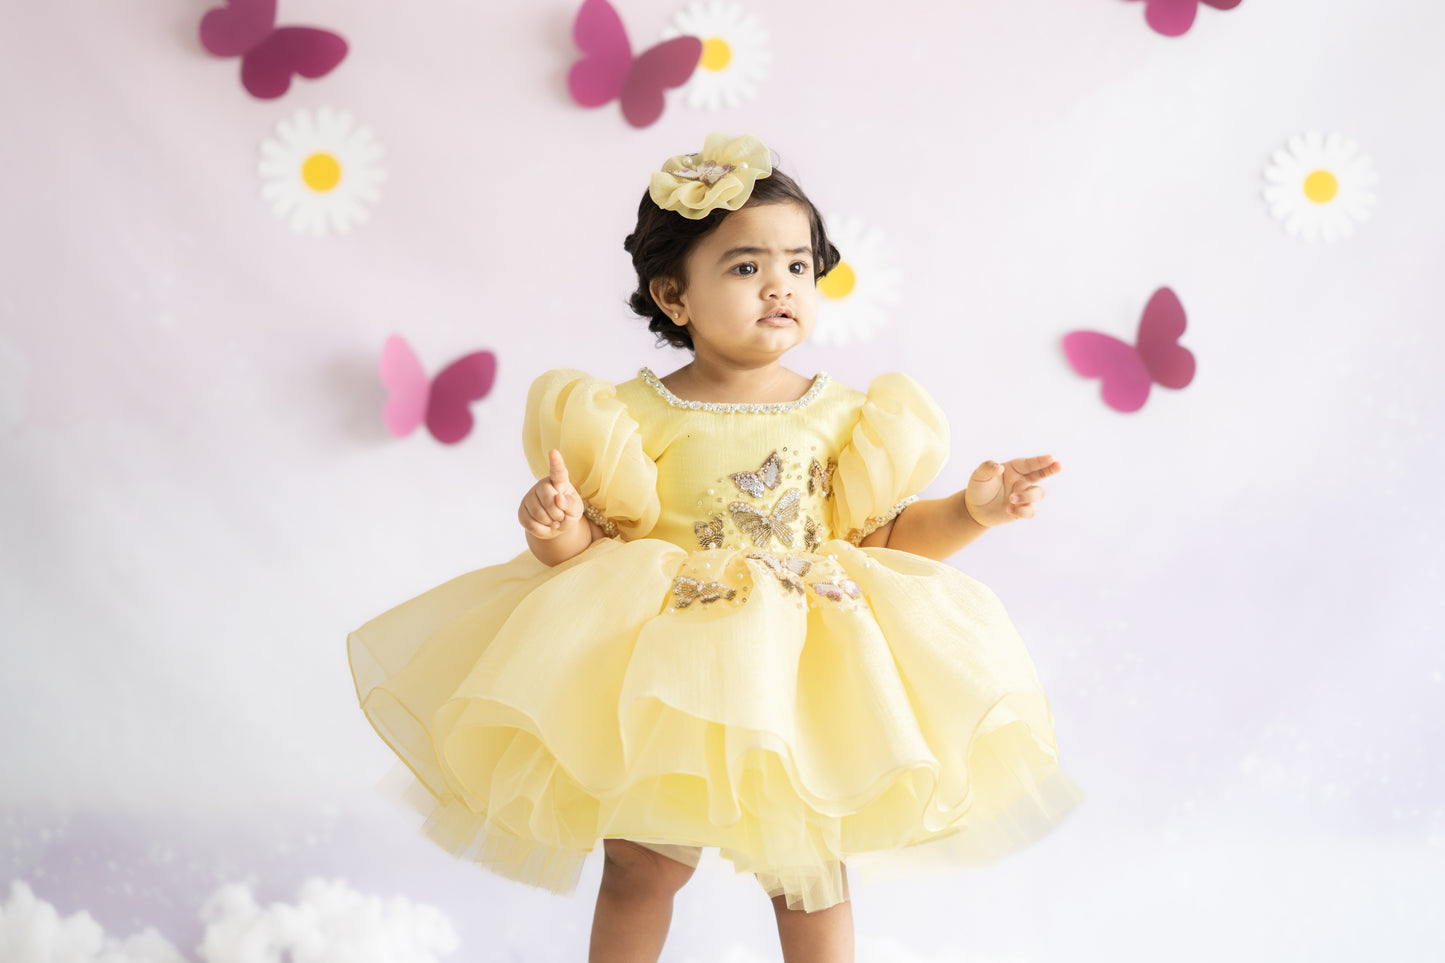 Puffy Textured Shimmer Organza Dress With Golden Butterflies